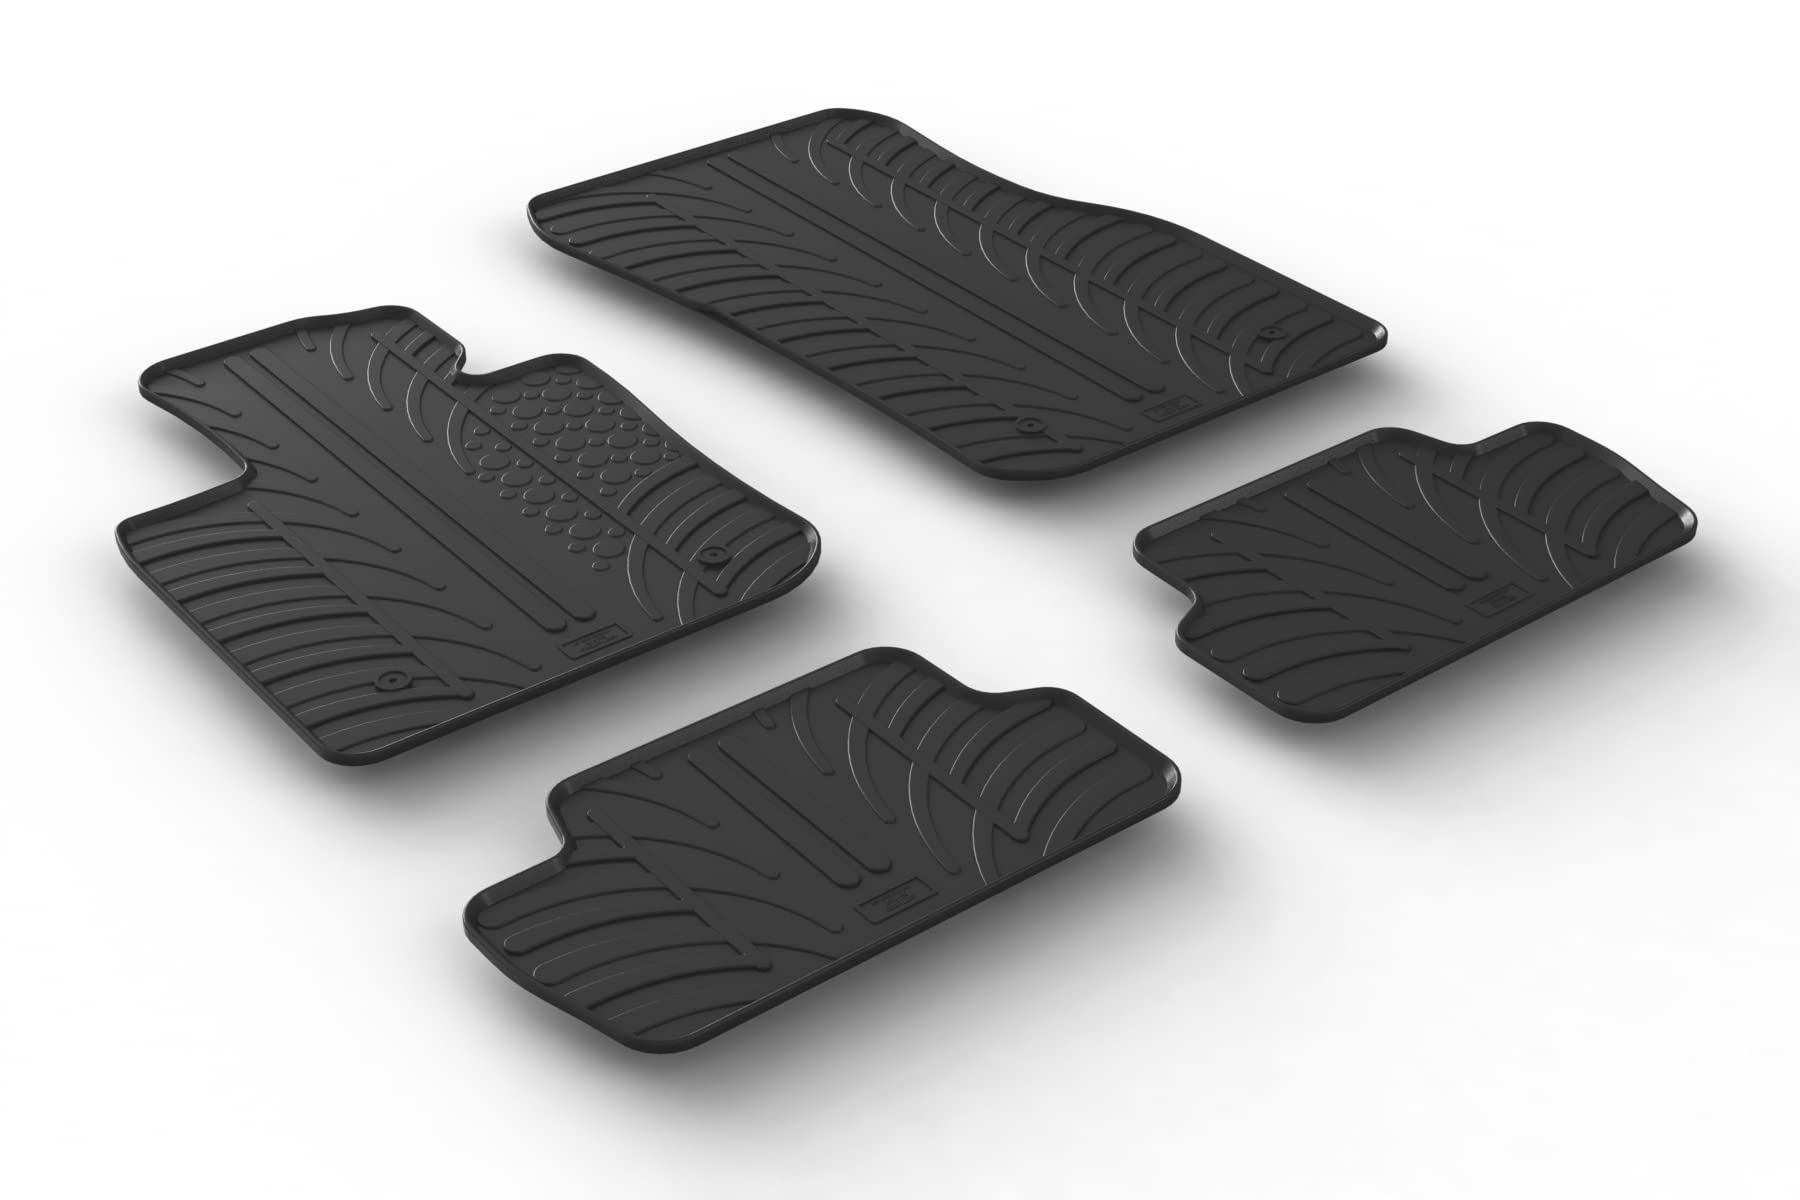 AROBA GL0407 Design Gummi Fußmatten kompatibel mit Mini Cooper 3 Türer F56 ab BJ. 03.2014> erhöhter Rand 4 TLG Farbe Schwarz Gummimatten Automatten passgenau von AROBA